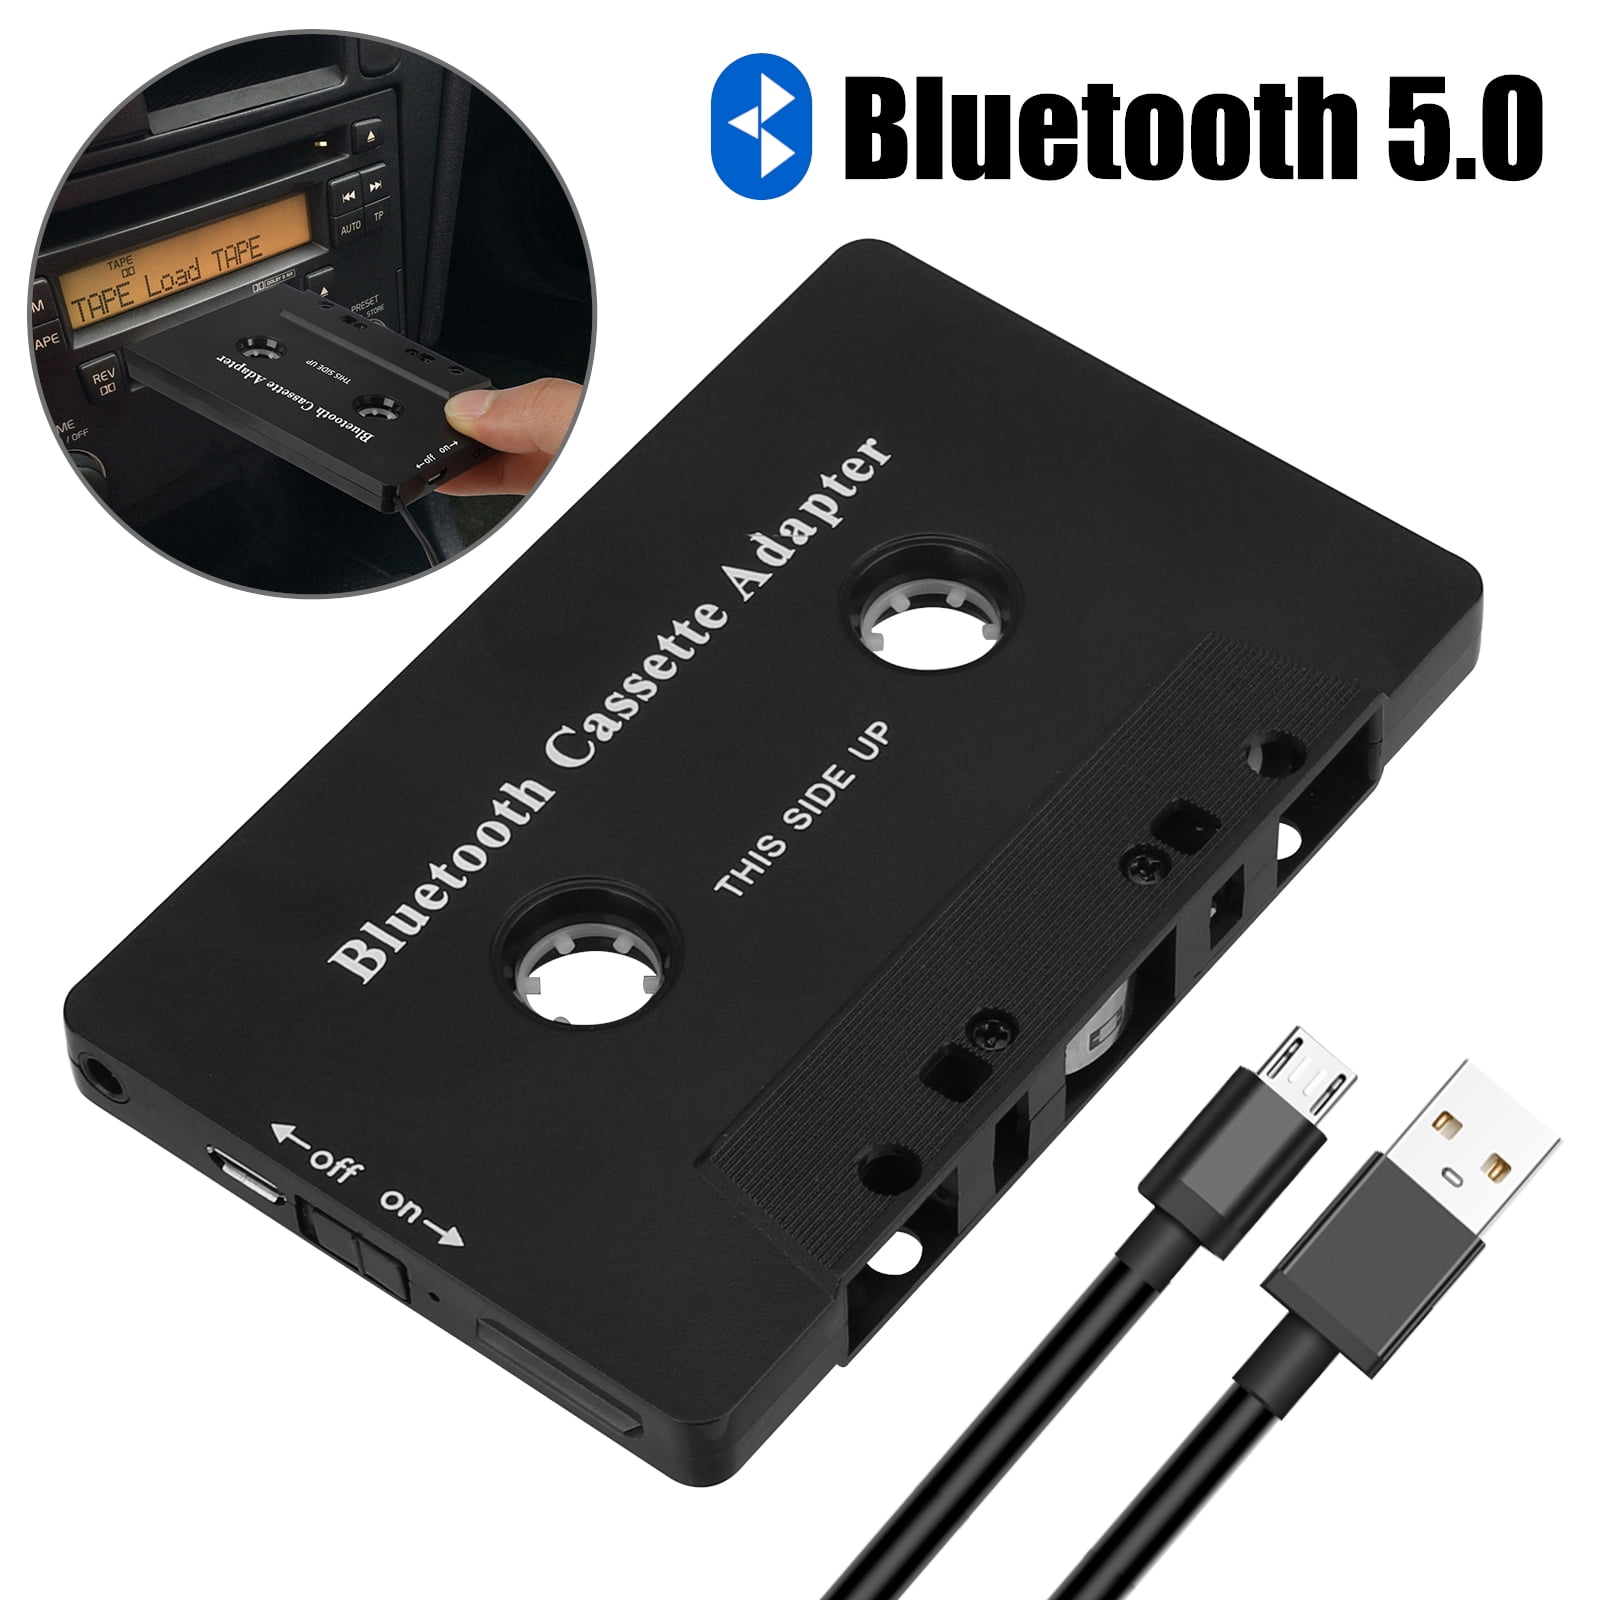 Cassete Adaptador de Áudio Bluetooth para Carro - Car Cassette